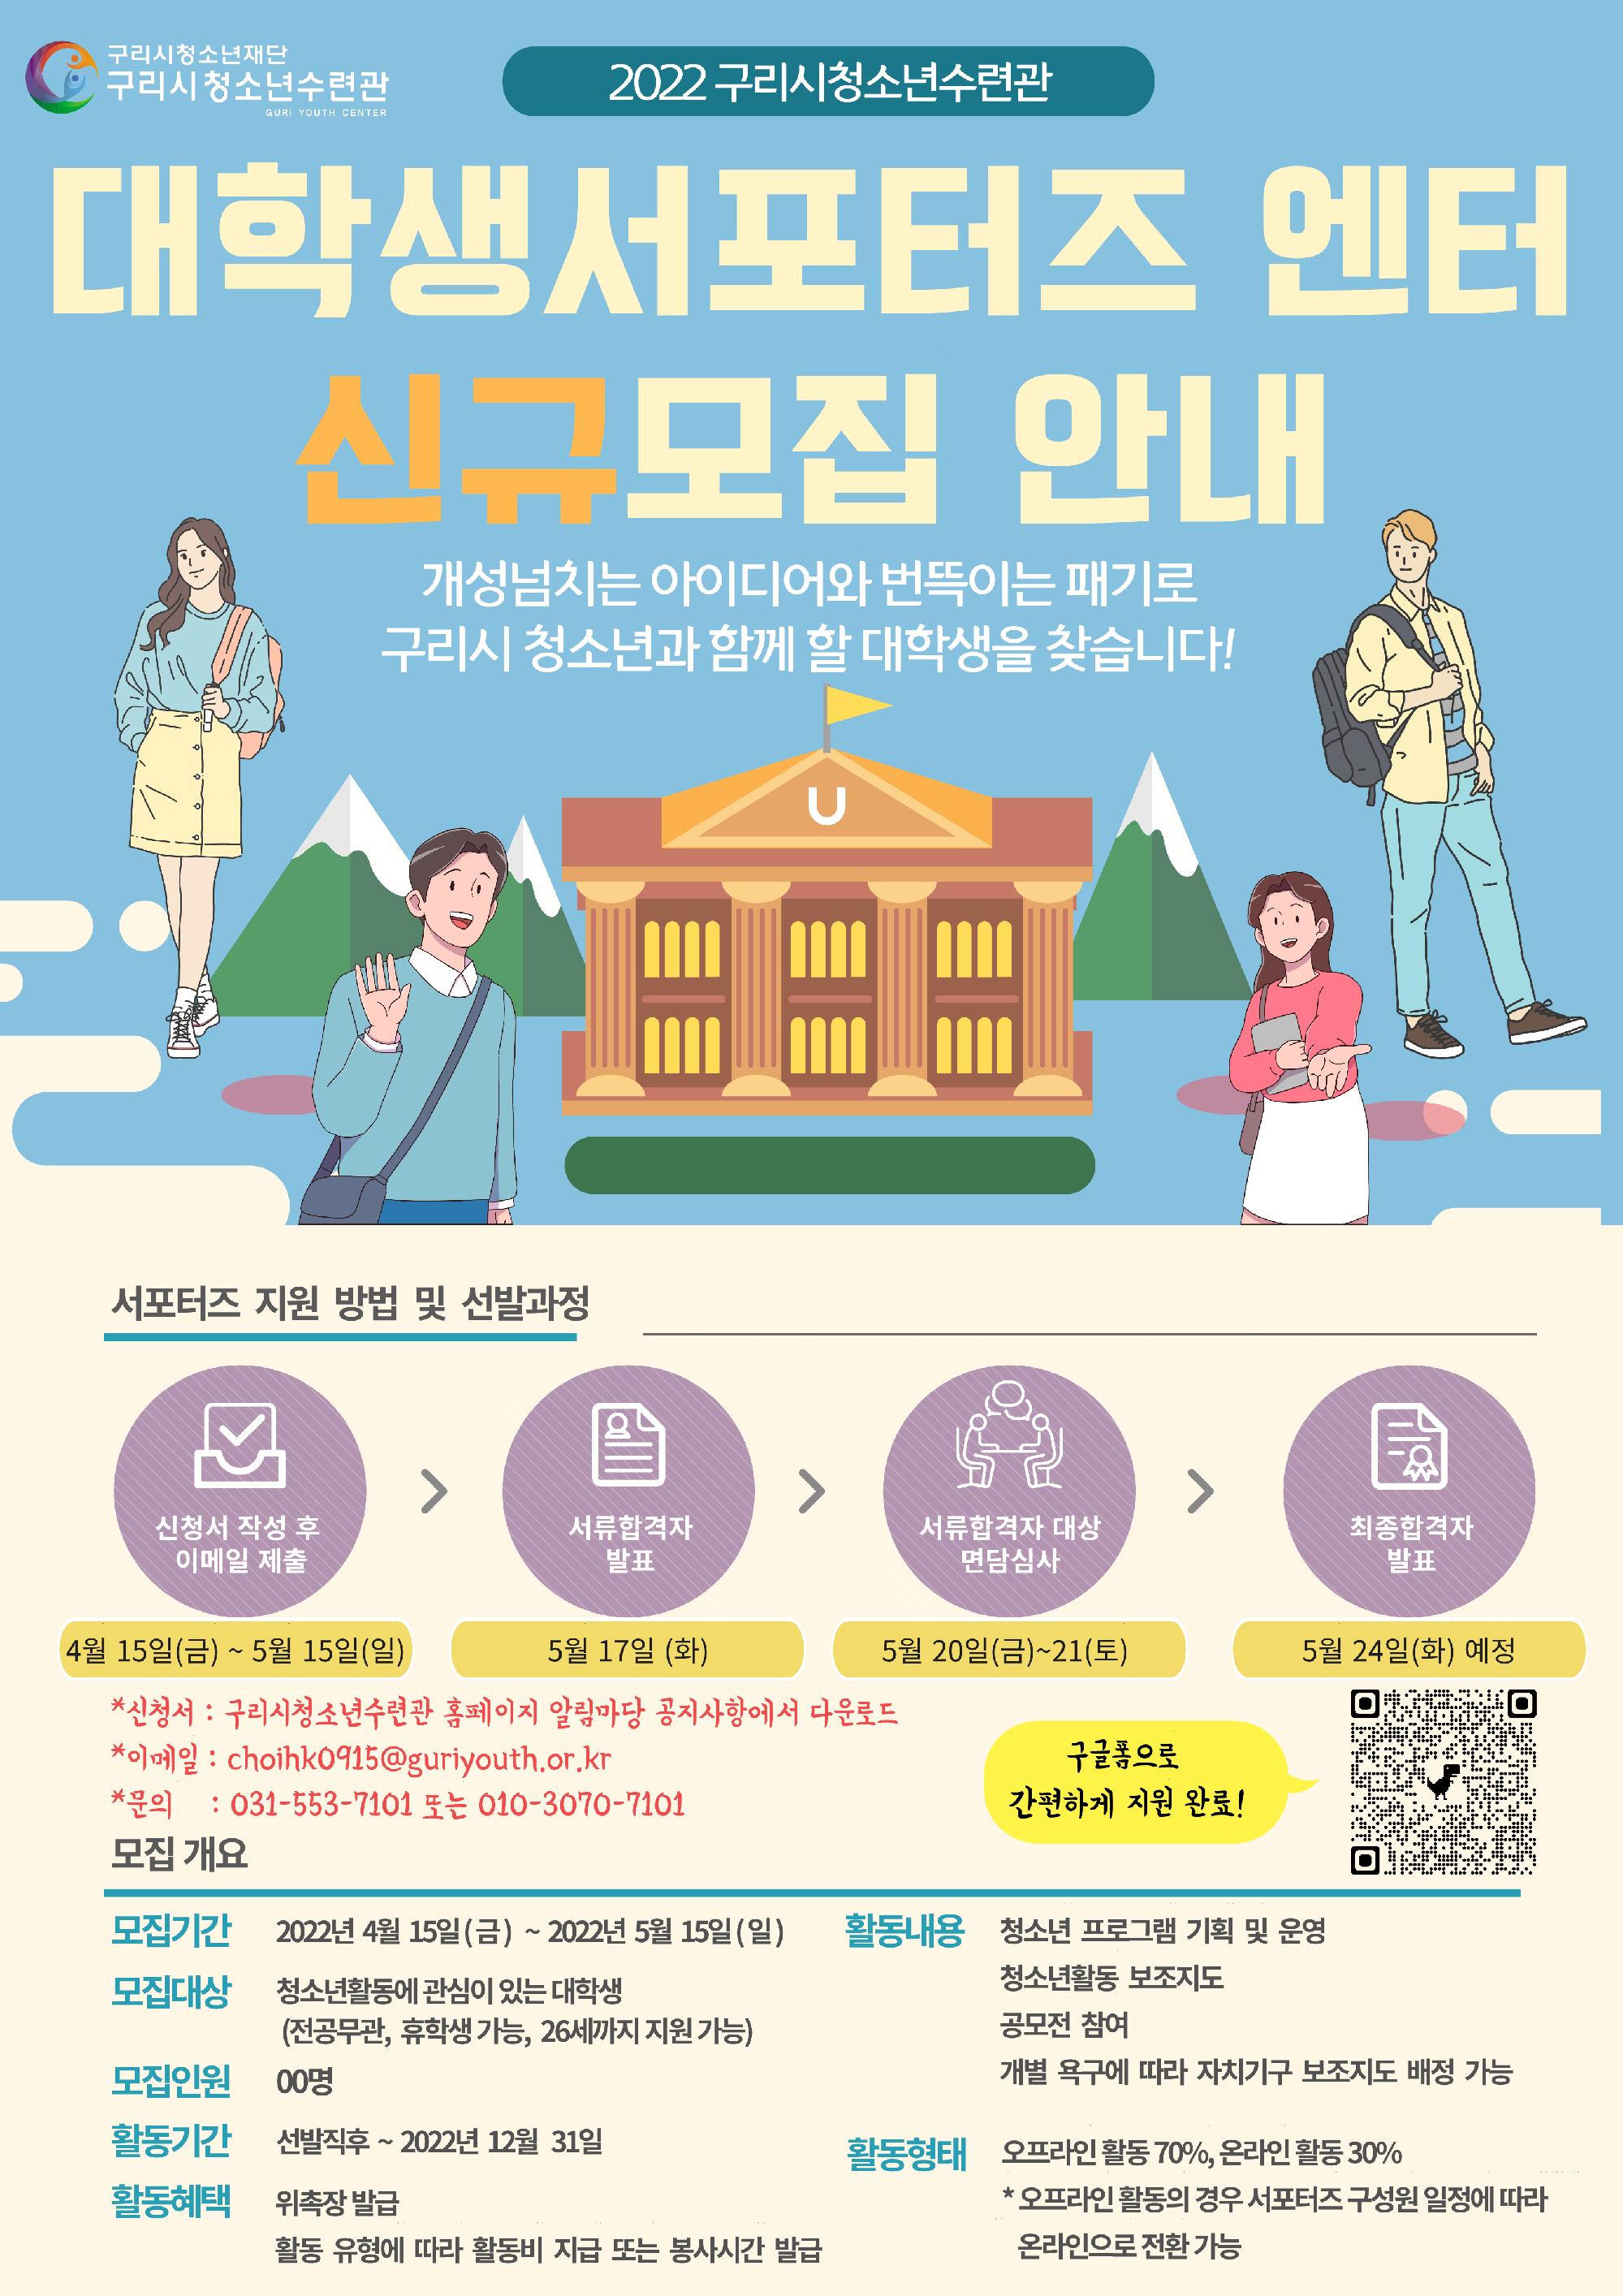 [복사본] 2022 대학생서포터즈 모집 홍보물_1.png